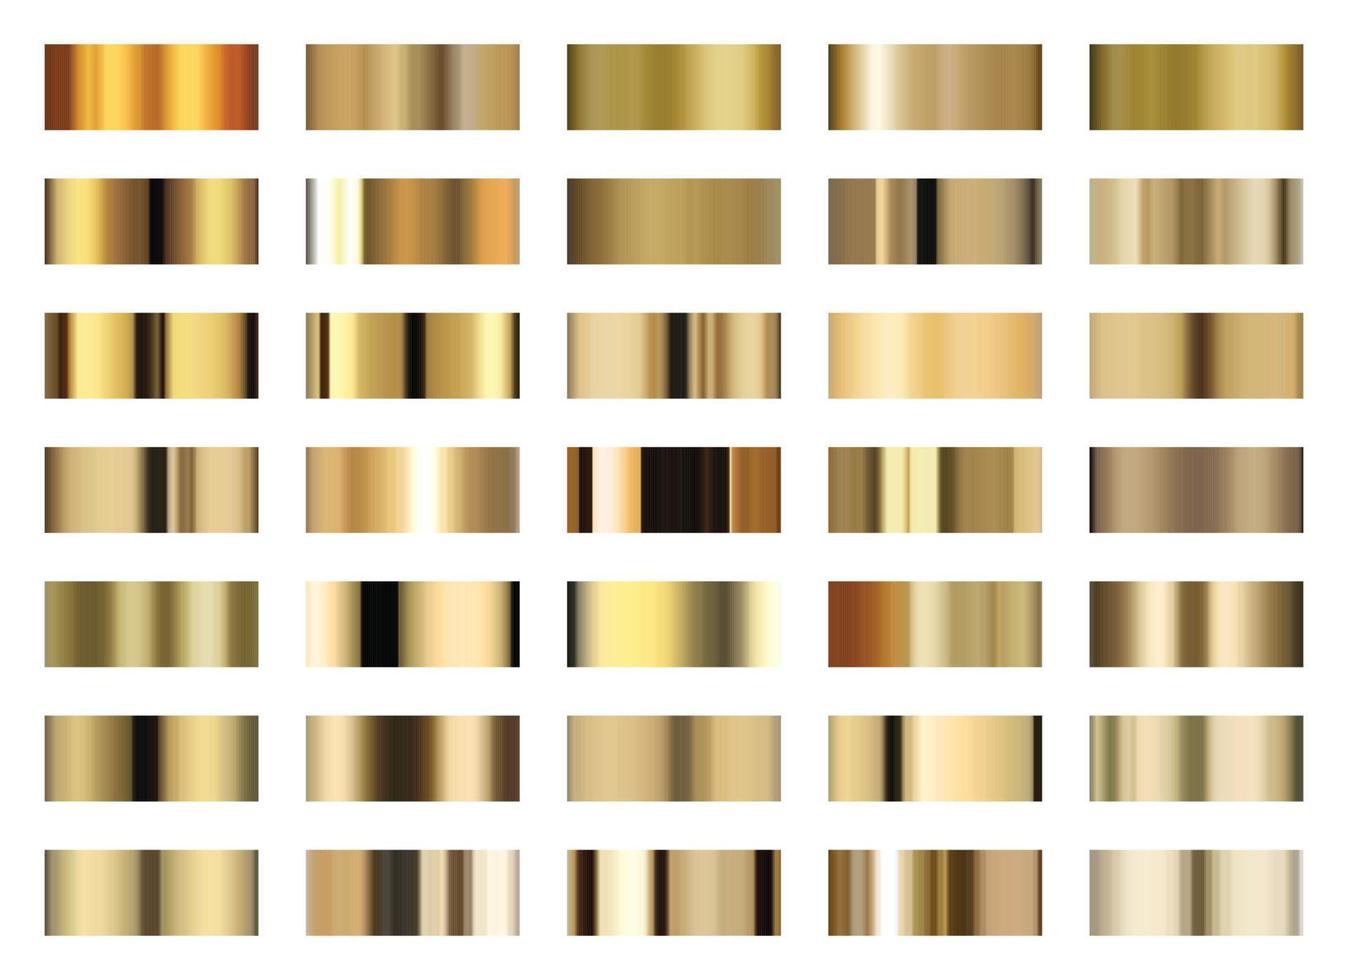 conjunto do ouro gradiente. ouro amostras vetor ilustração isolado em branco